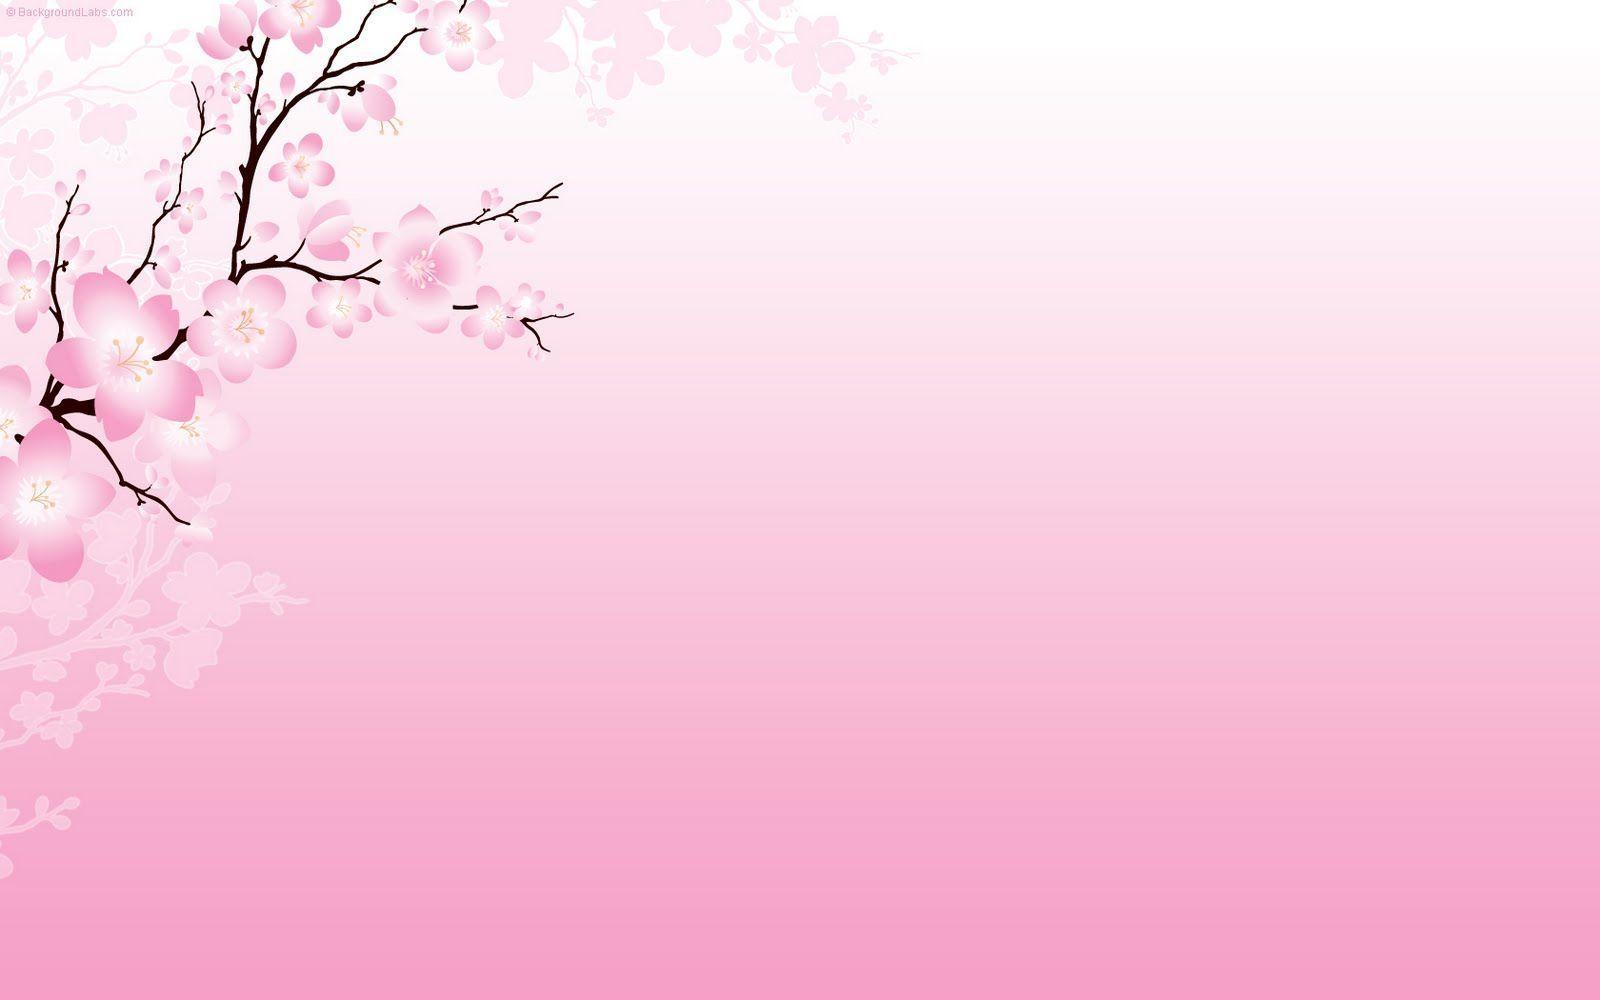 Wallpaper For > Cherry Blossom Background Wallpaper